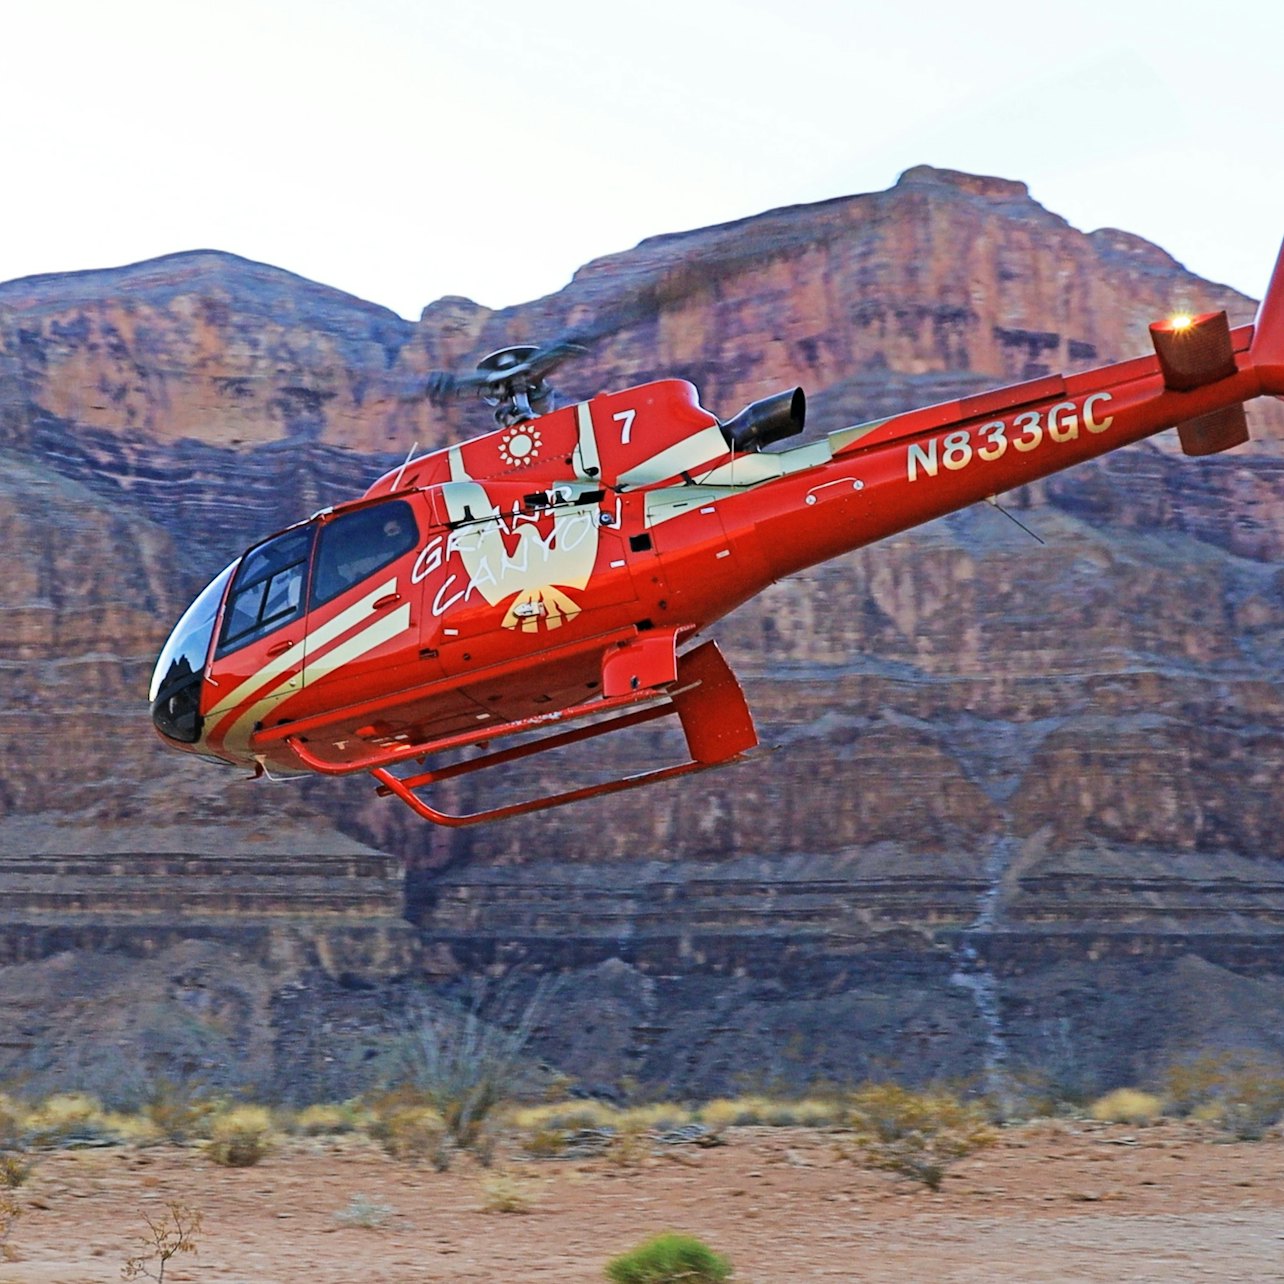 Grand Canyon Skywalk + voo de helicóptero + passeio de barco saindo de Las Vegas - Acomodações em Las Vegas, Nevada